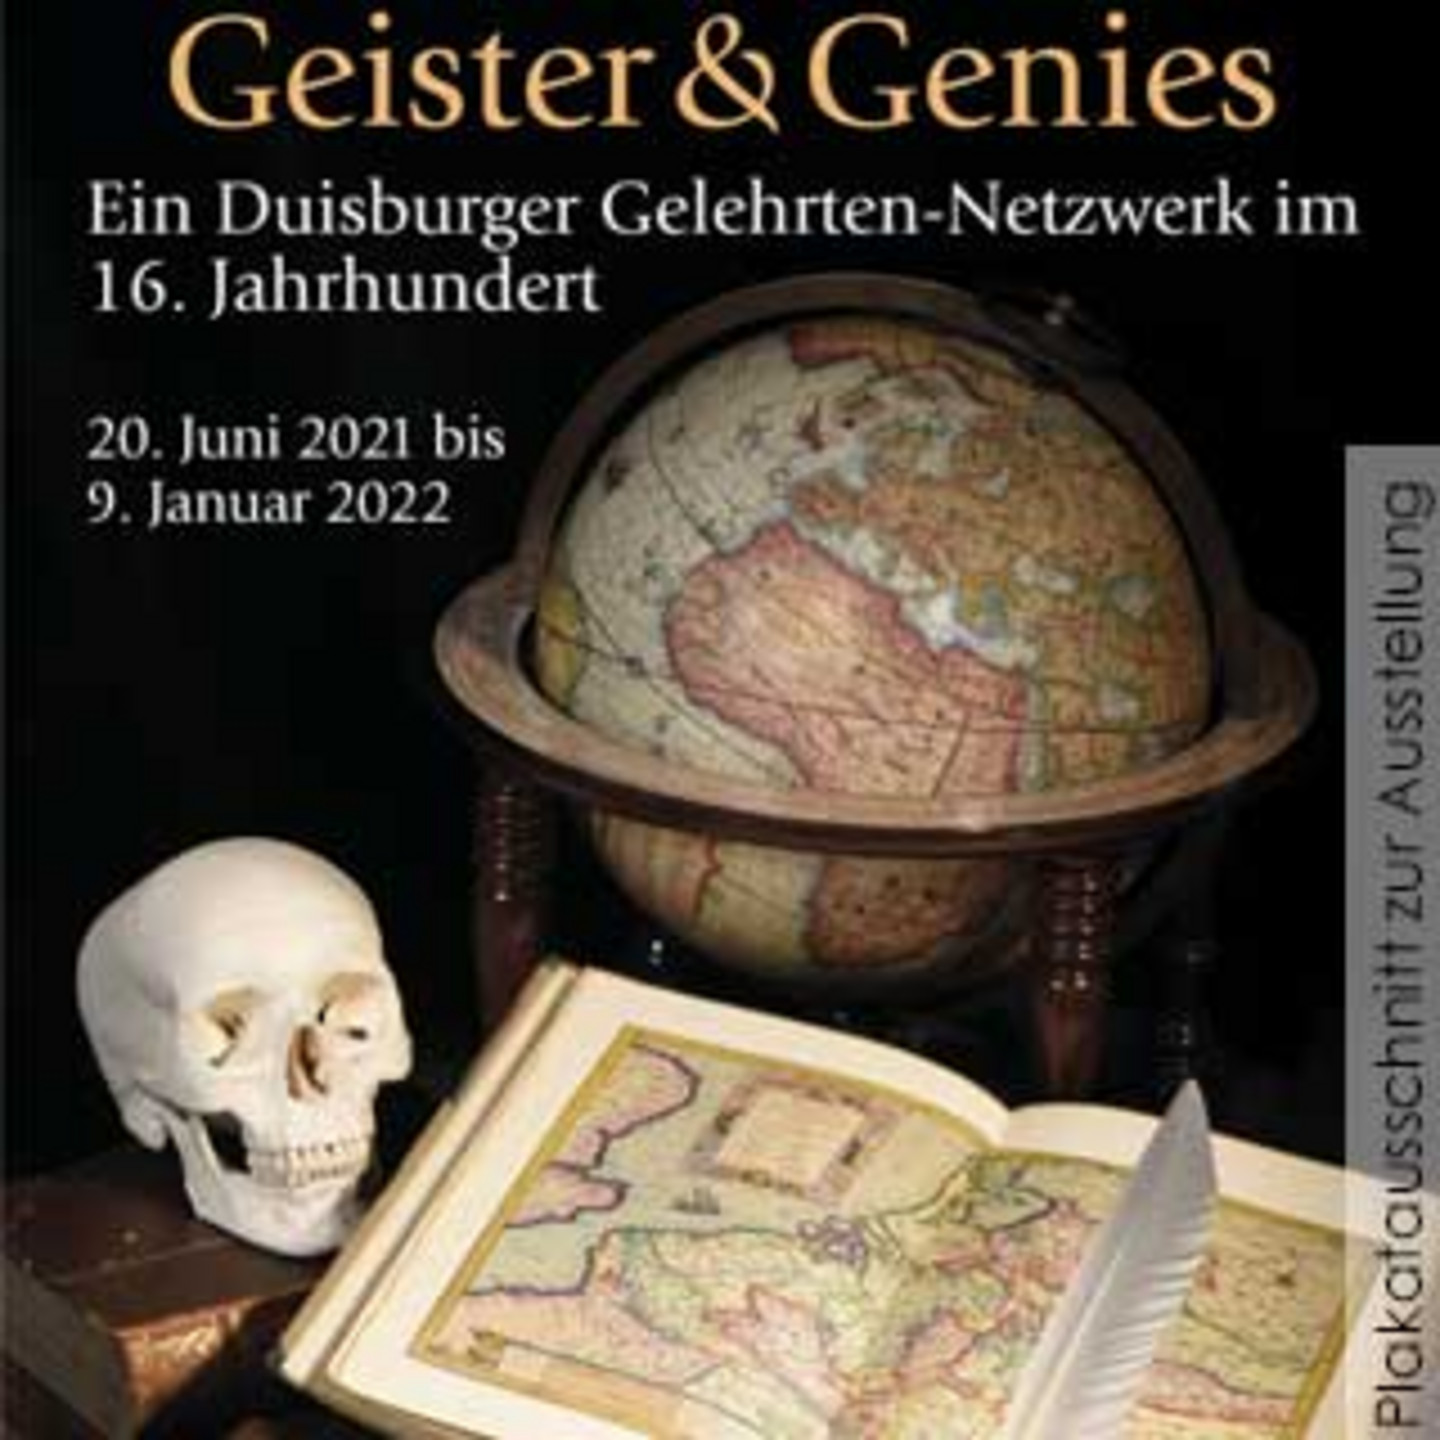 Foto von einem Skelett-Kopf, einer Weltkarte und einem Globus mit der Überschrift "Geister & Genies - Ein Duisburger Gelehrten-Netzwerk im 16.Jahrhundert".